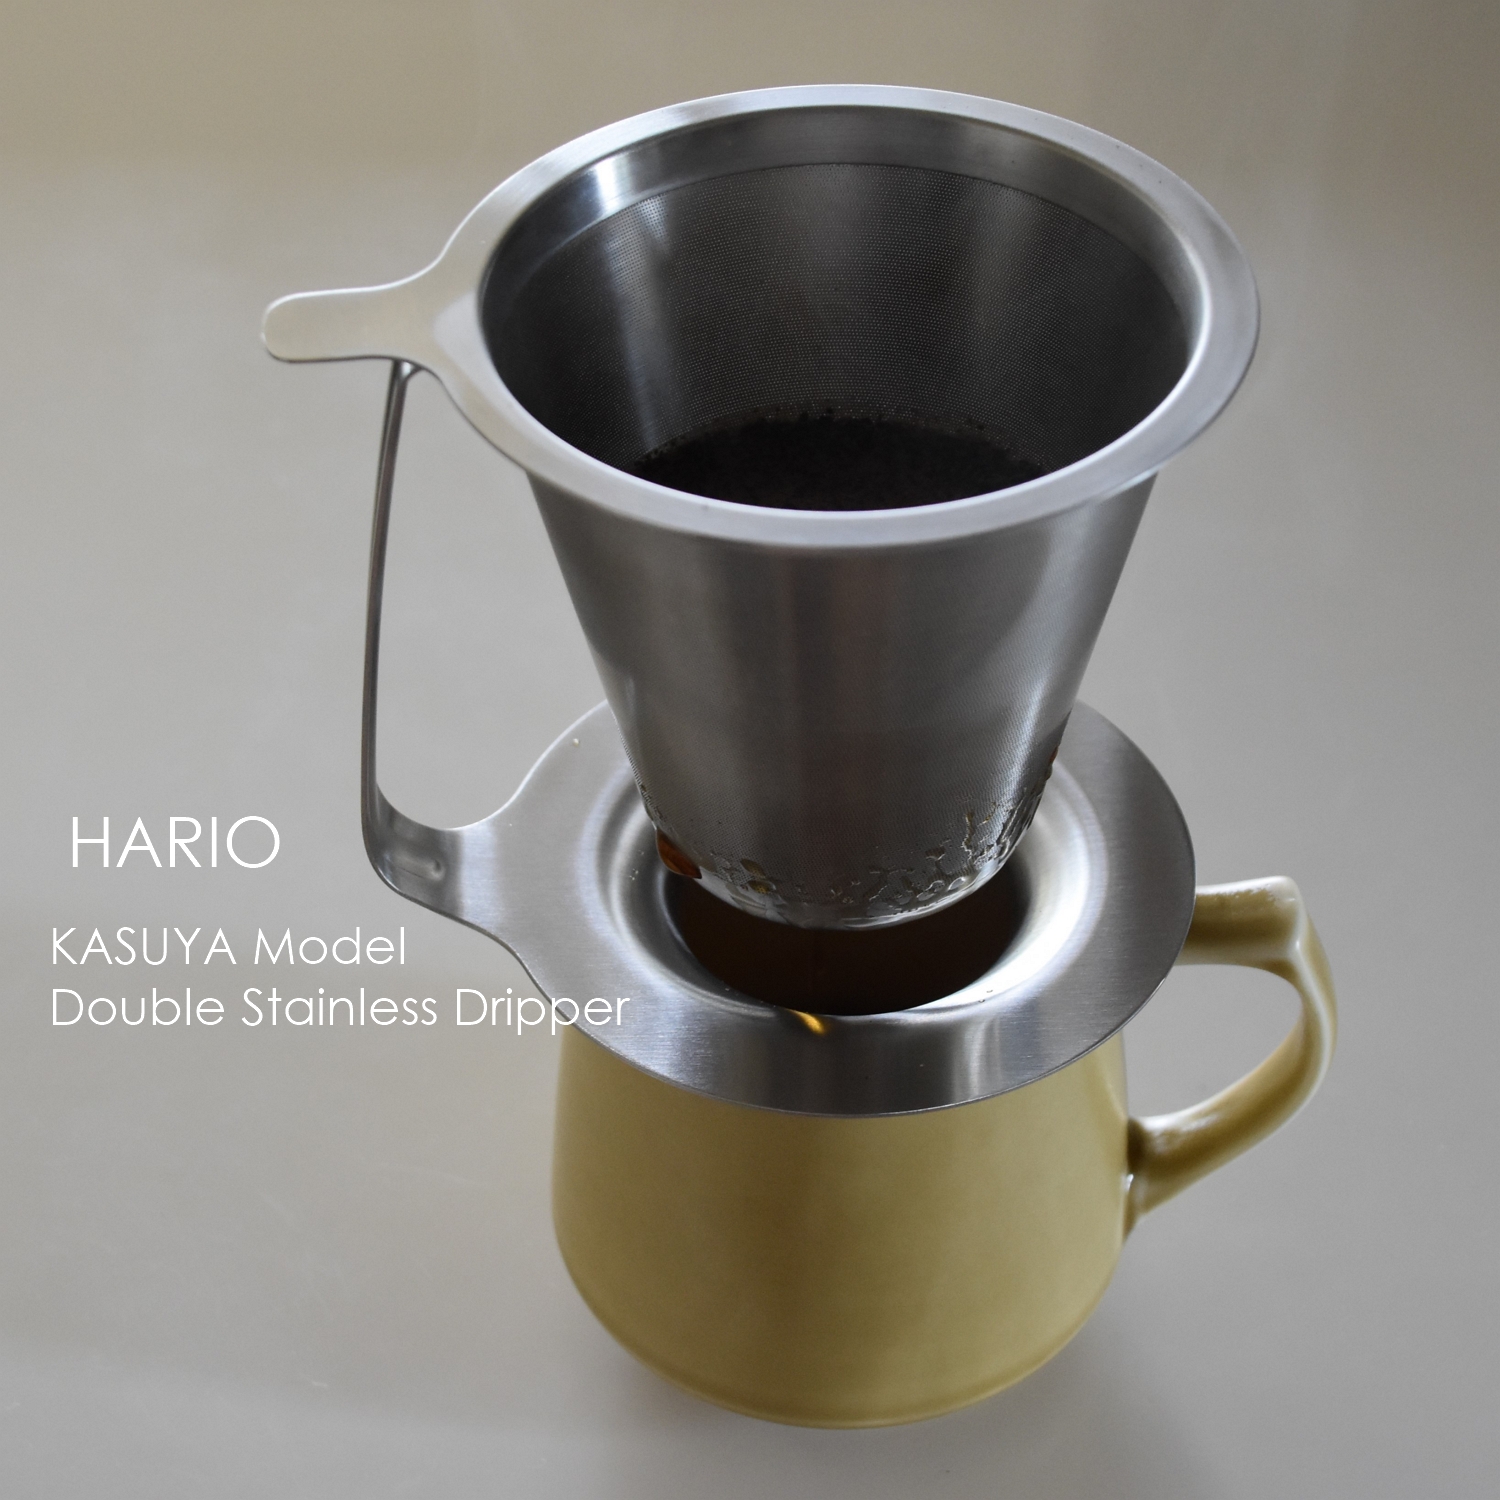 HARIO 】丁寧にコーヒーを淹れるハリオの粕谷モデル【ダブルステンレス